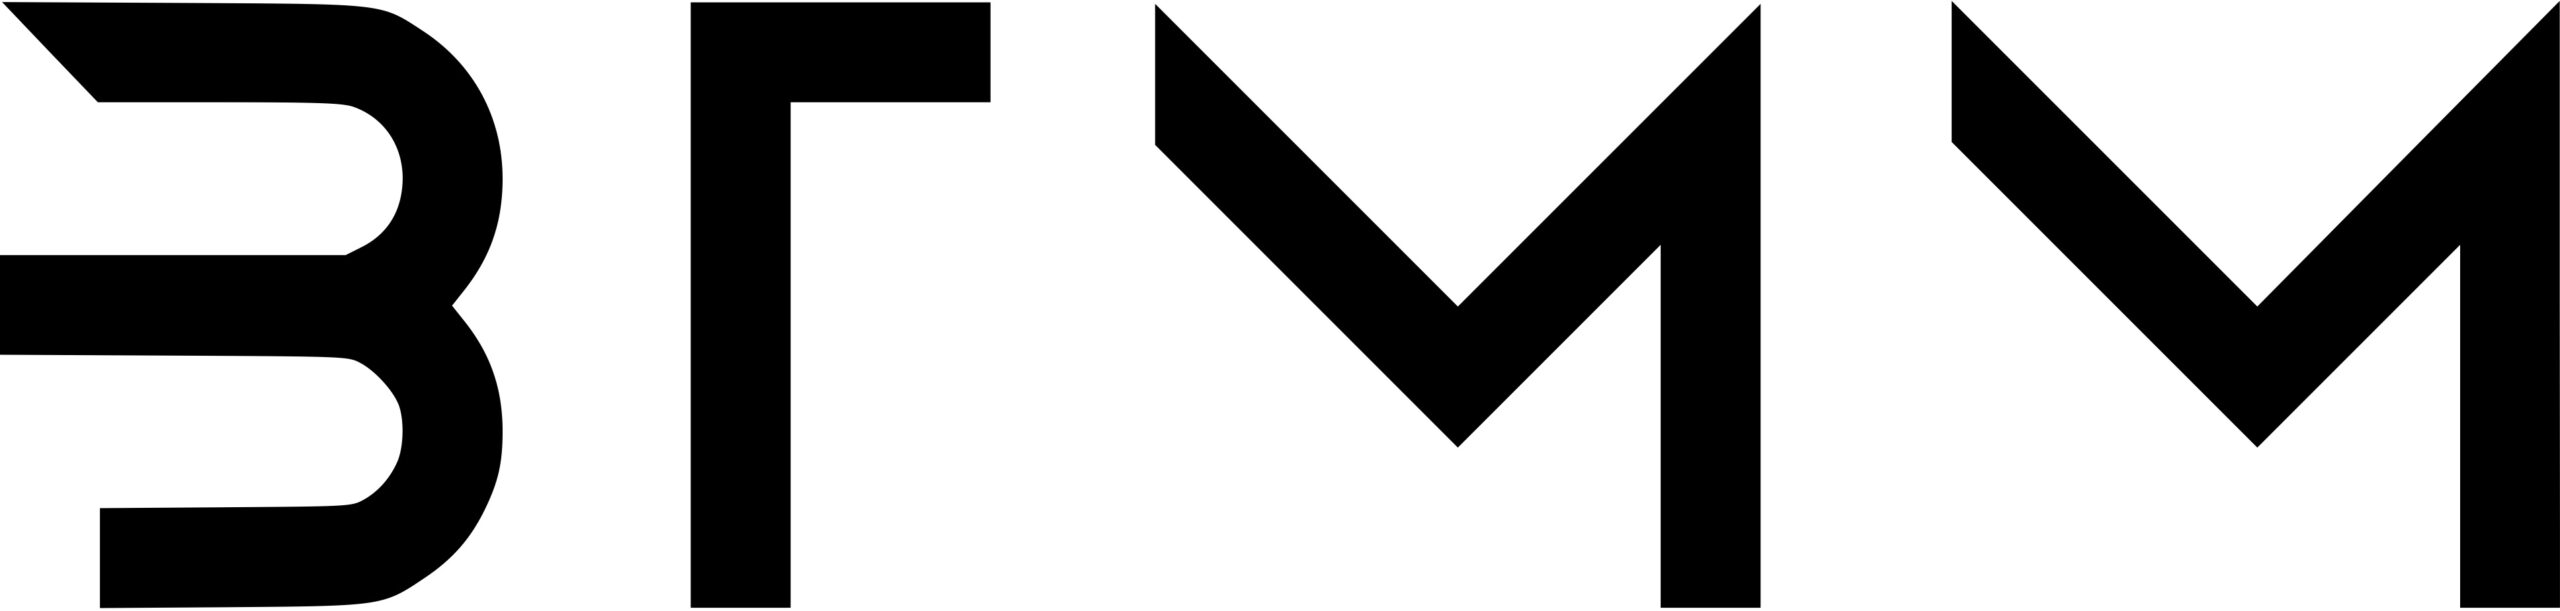 BTMM s_w_Logo3